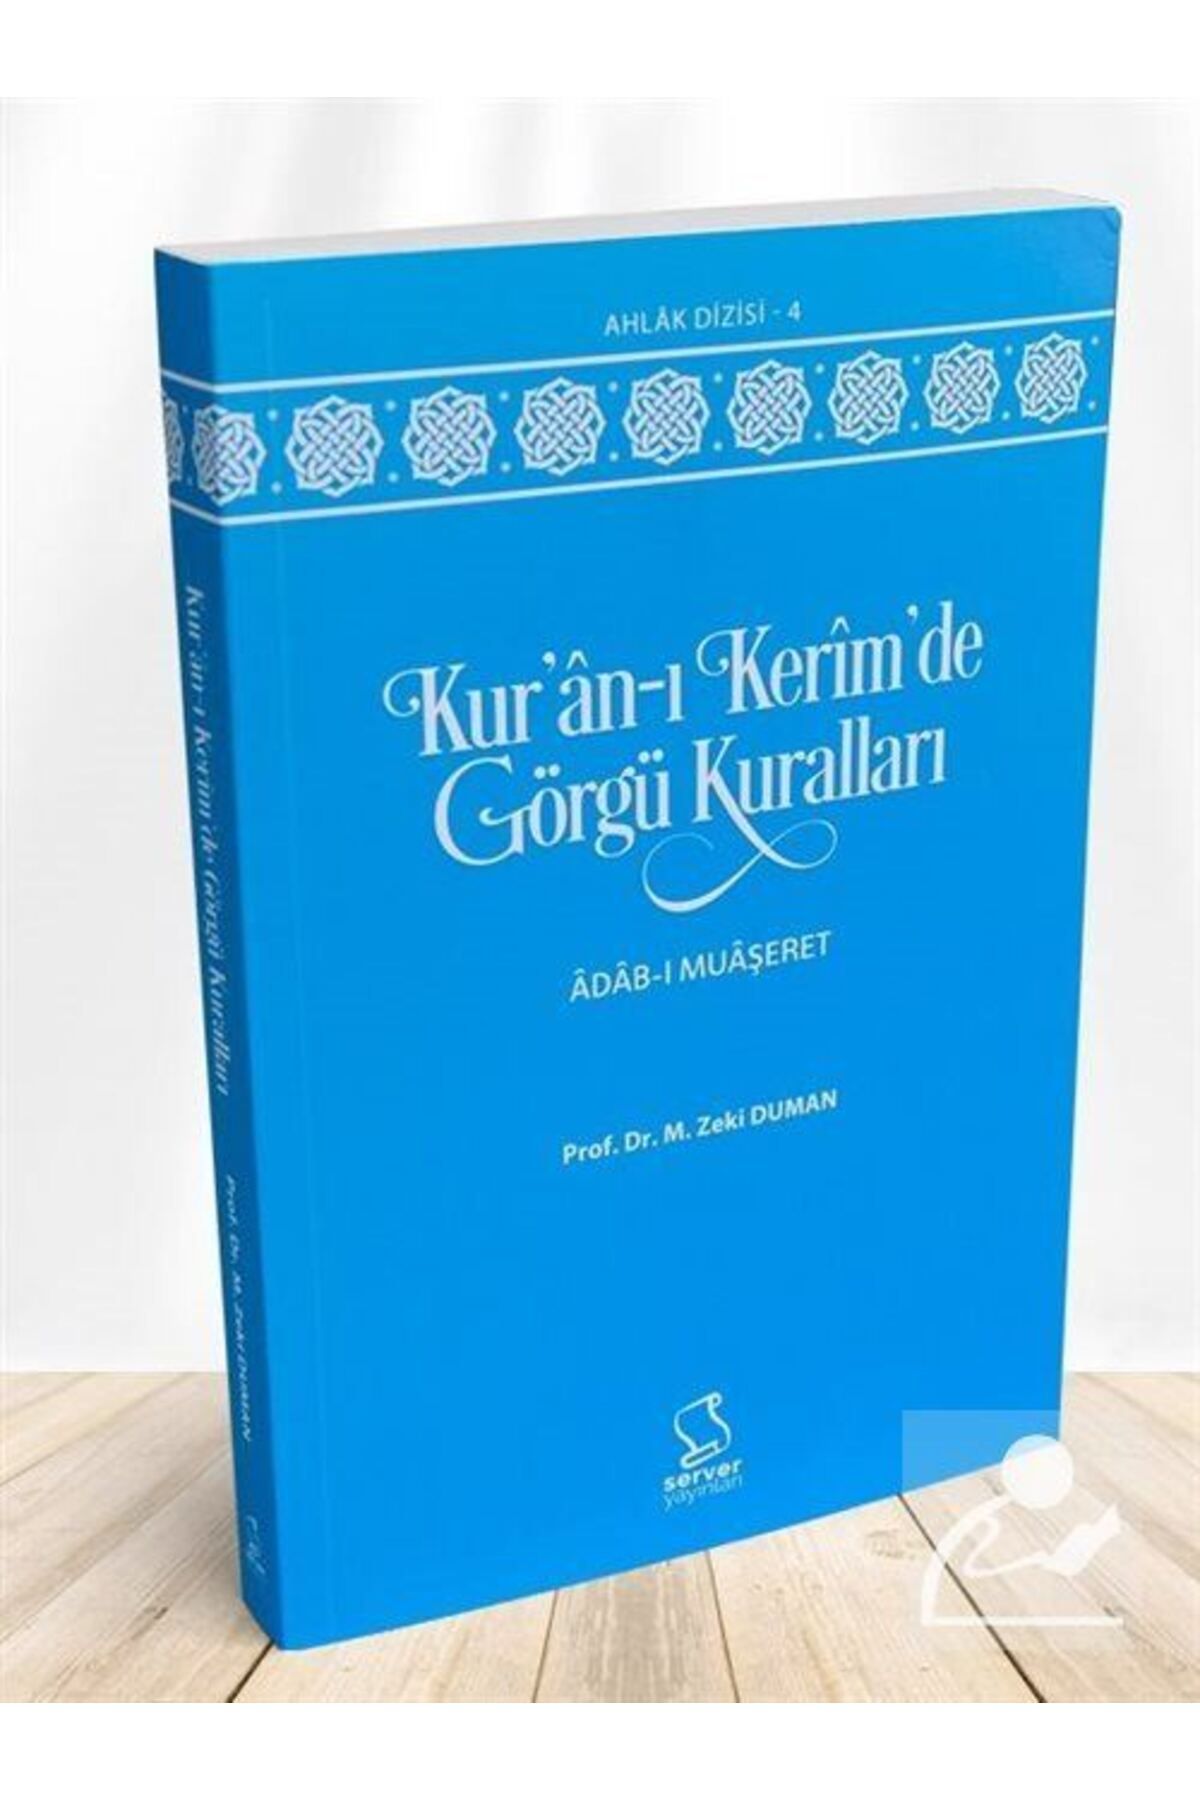 Server Yayınları Kur'an-ı Kerim'de Görgü Kuralları Adabı Muaşeret